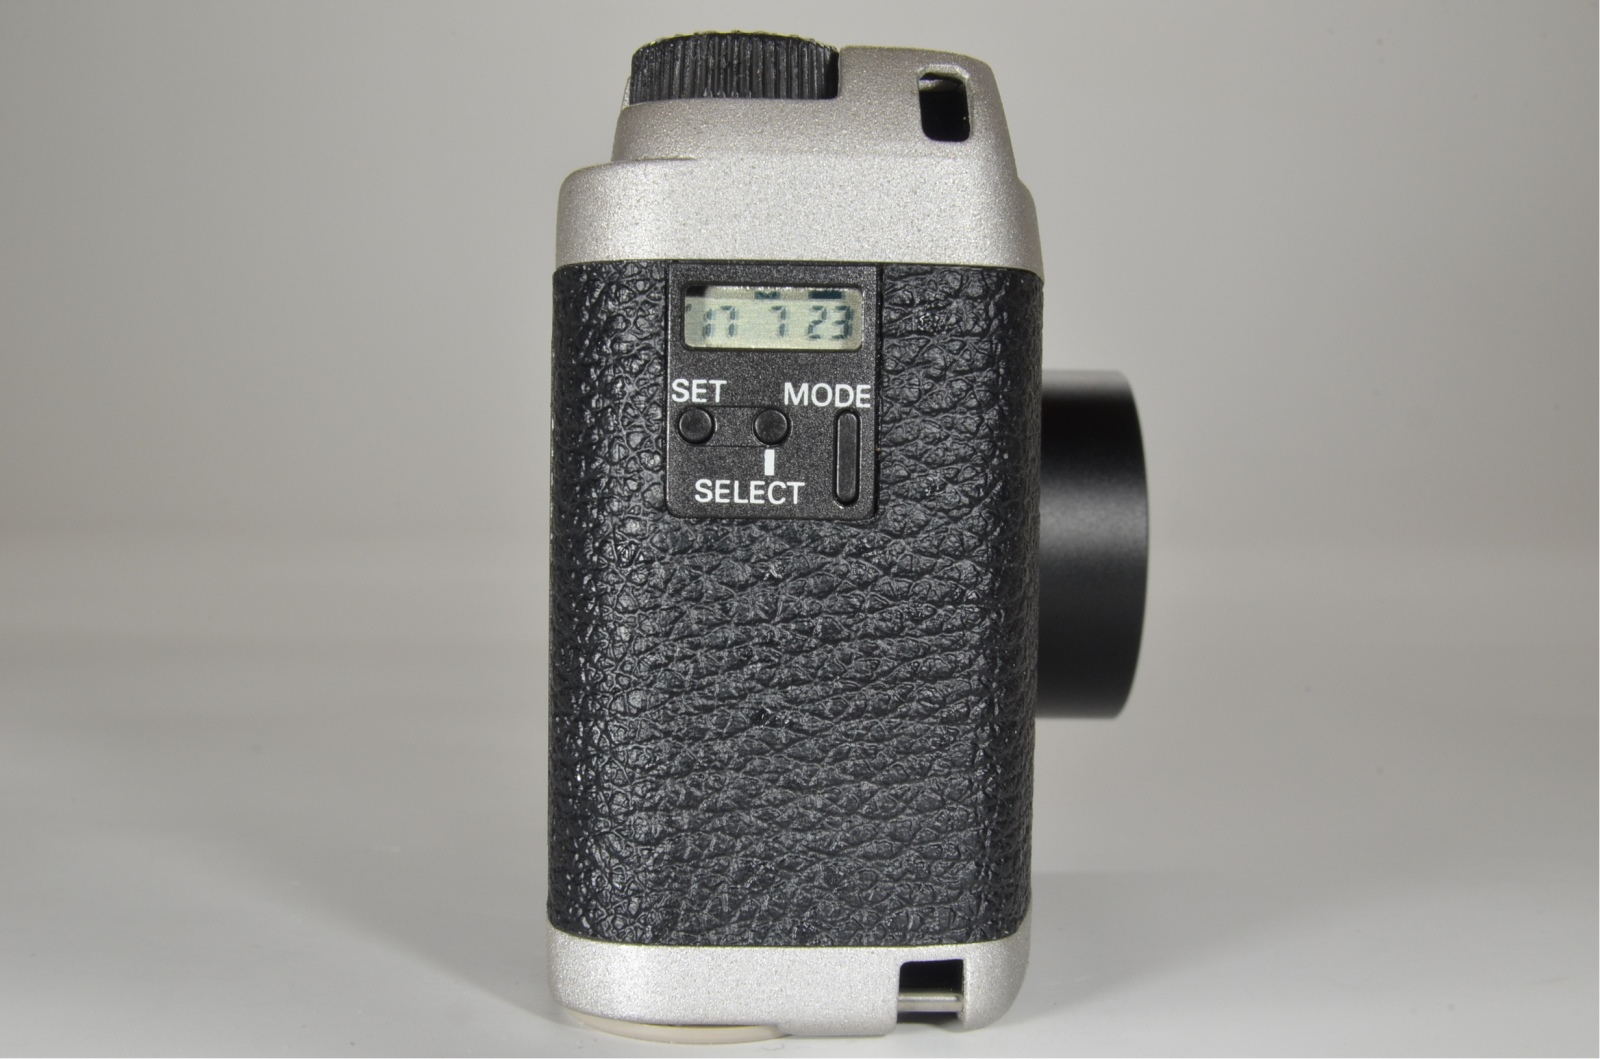 ricoh gr1v date p&s 35mm film camera 28mm f2.8 outlet item